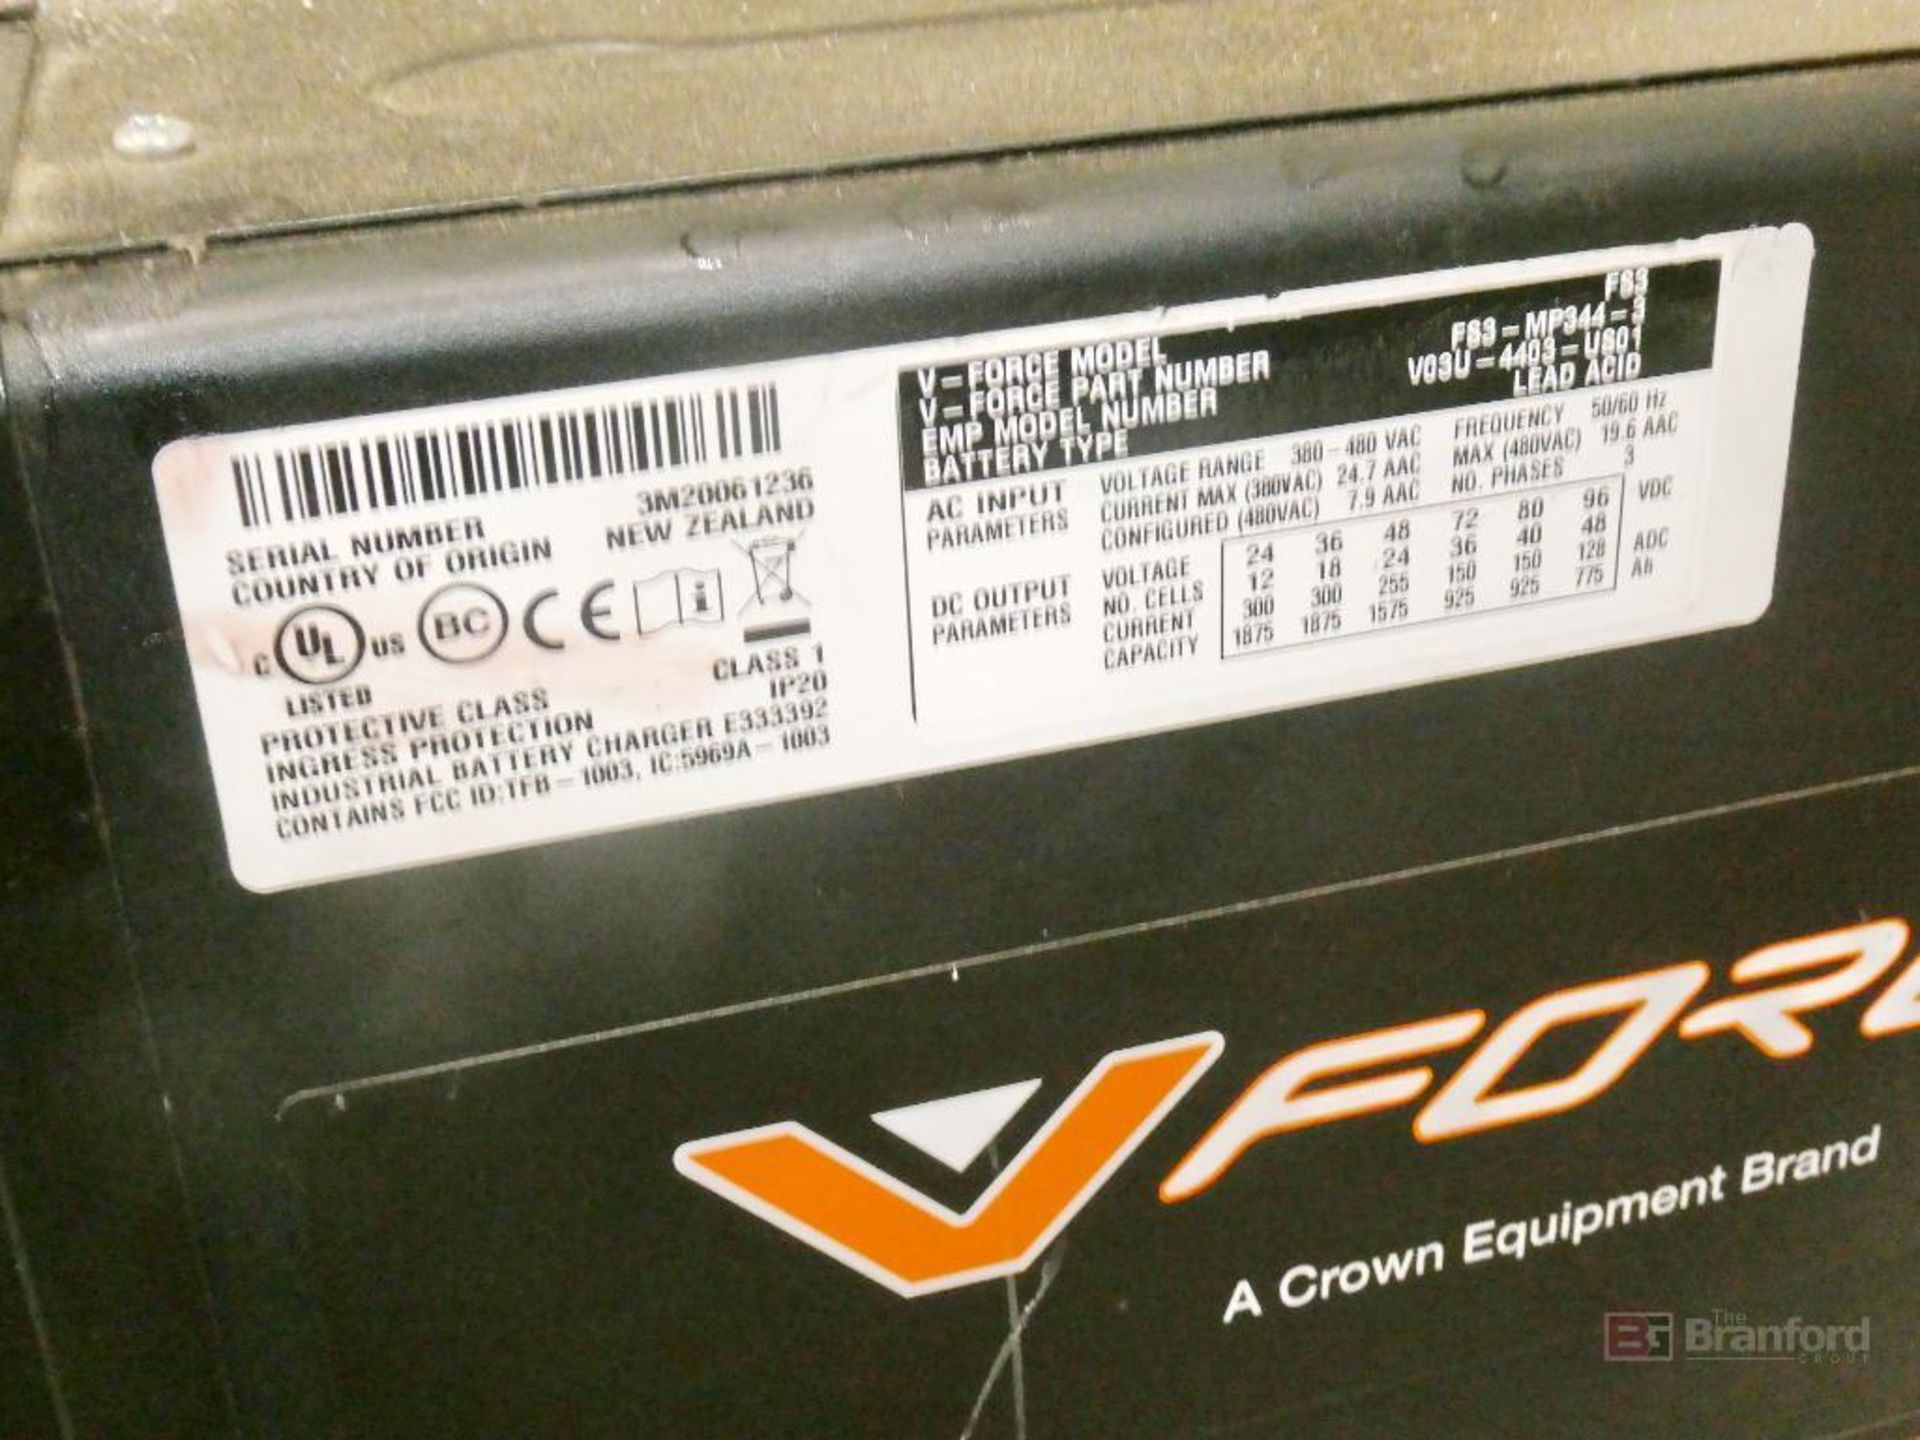 V-Force Model FS3-MP344-3, Forklift Multi-Voltage Battery Charger - Image 2 of 4